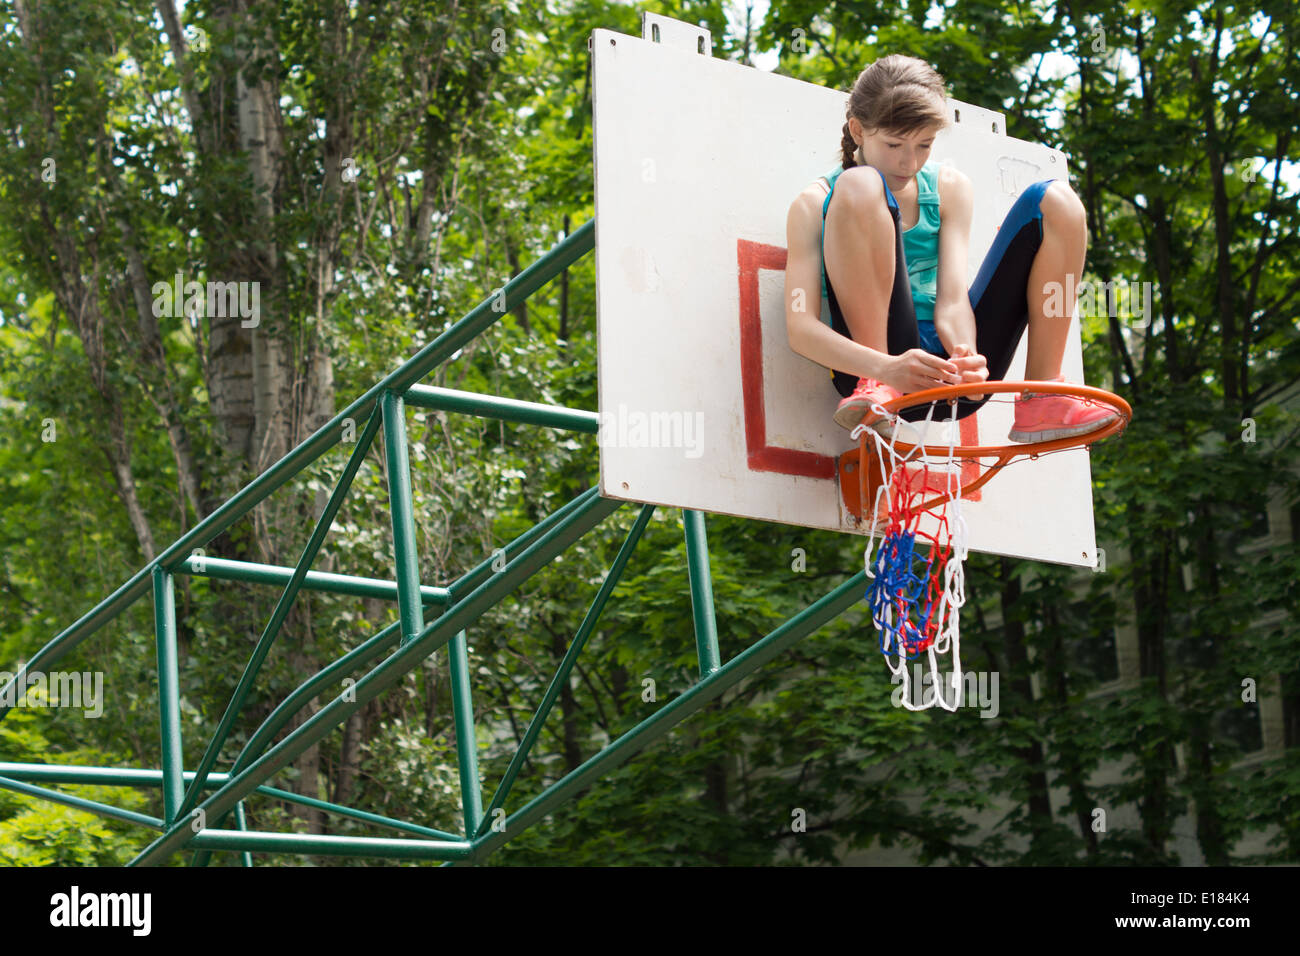 La fixation d'une jeune fille agile sur un terrain de basket-ball net Montant du but qui est posée sur le cercle de métal en le fixant avec ses mains Banque D'Images